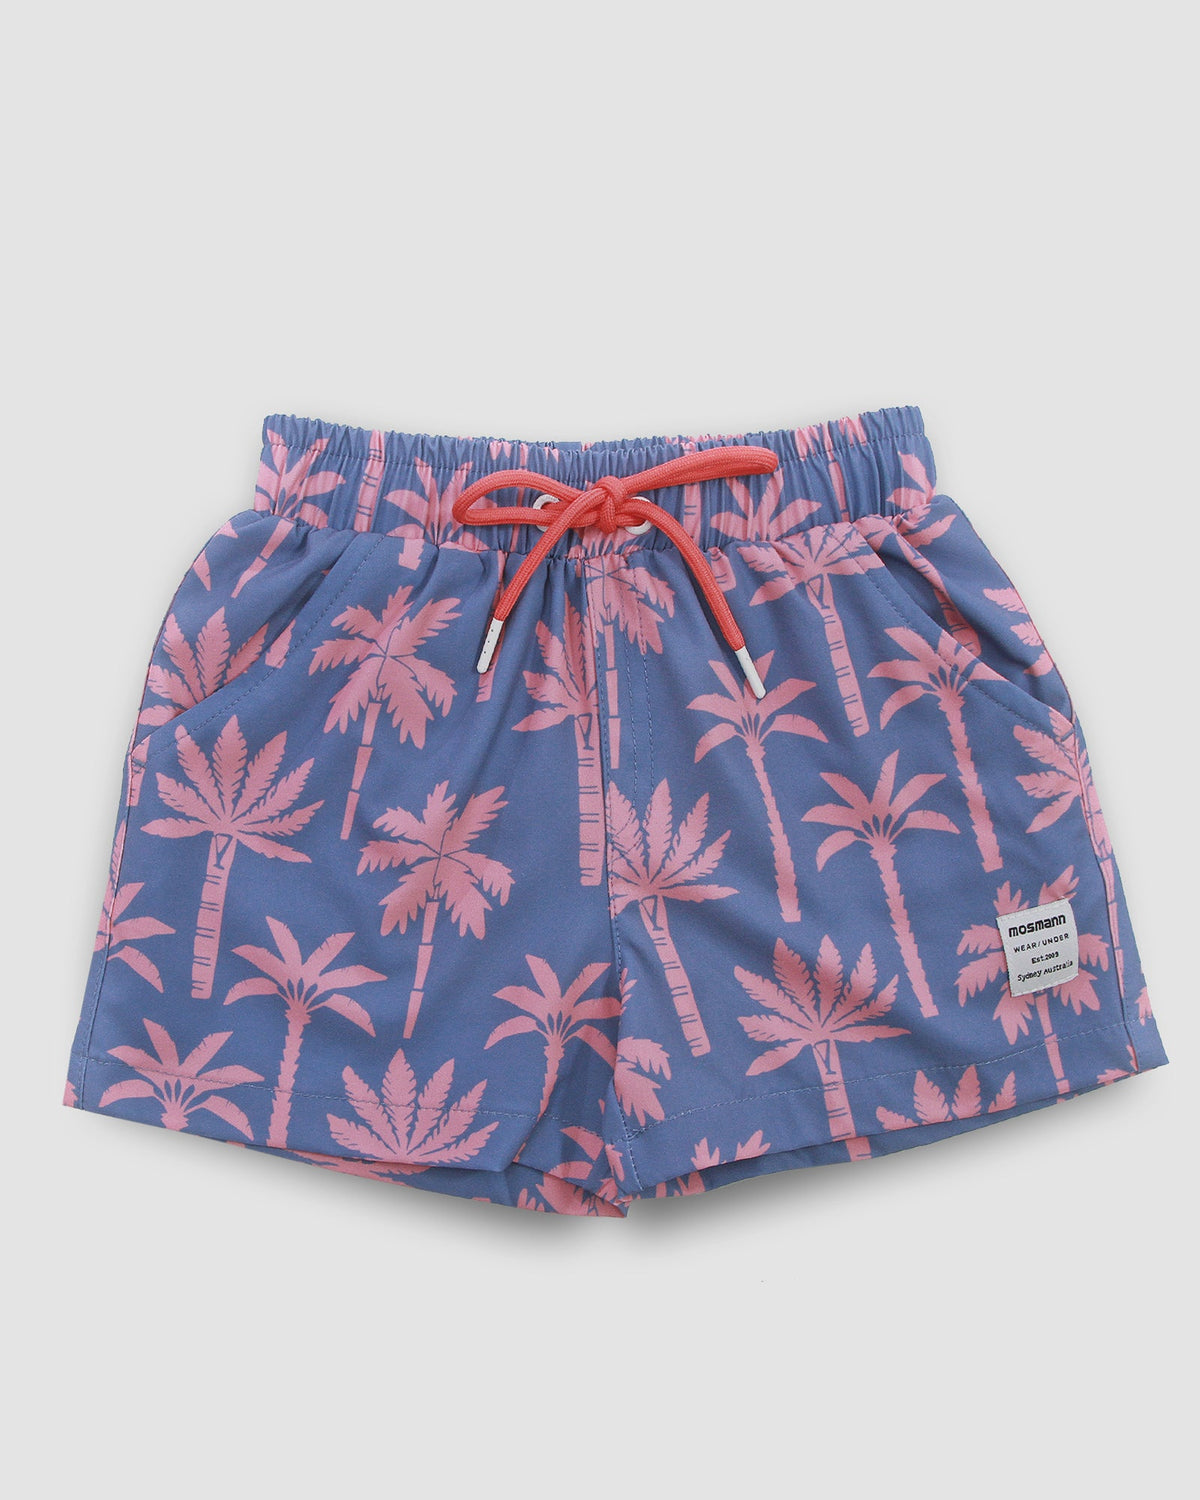 Boy's Swim Shorts - Palm Dreams Jr.